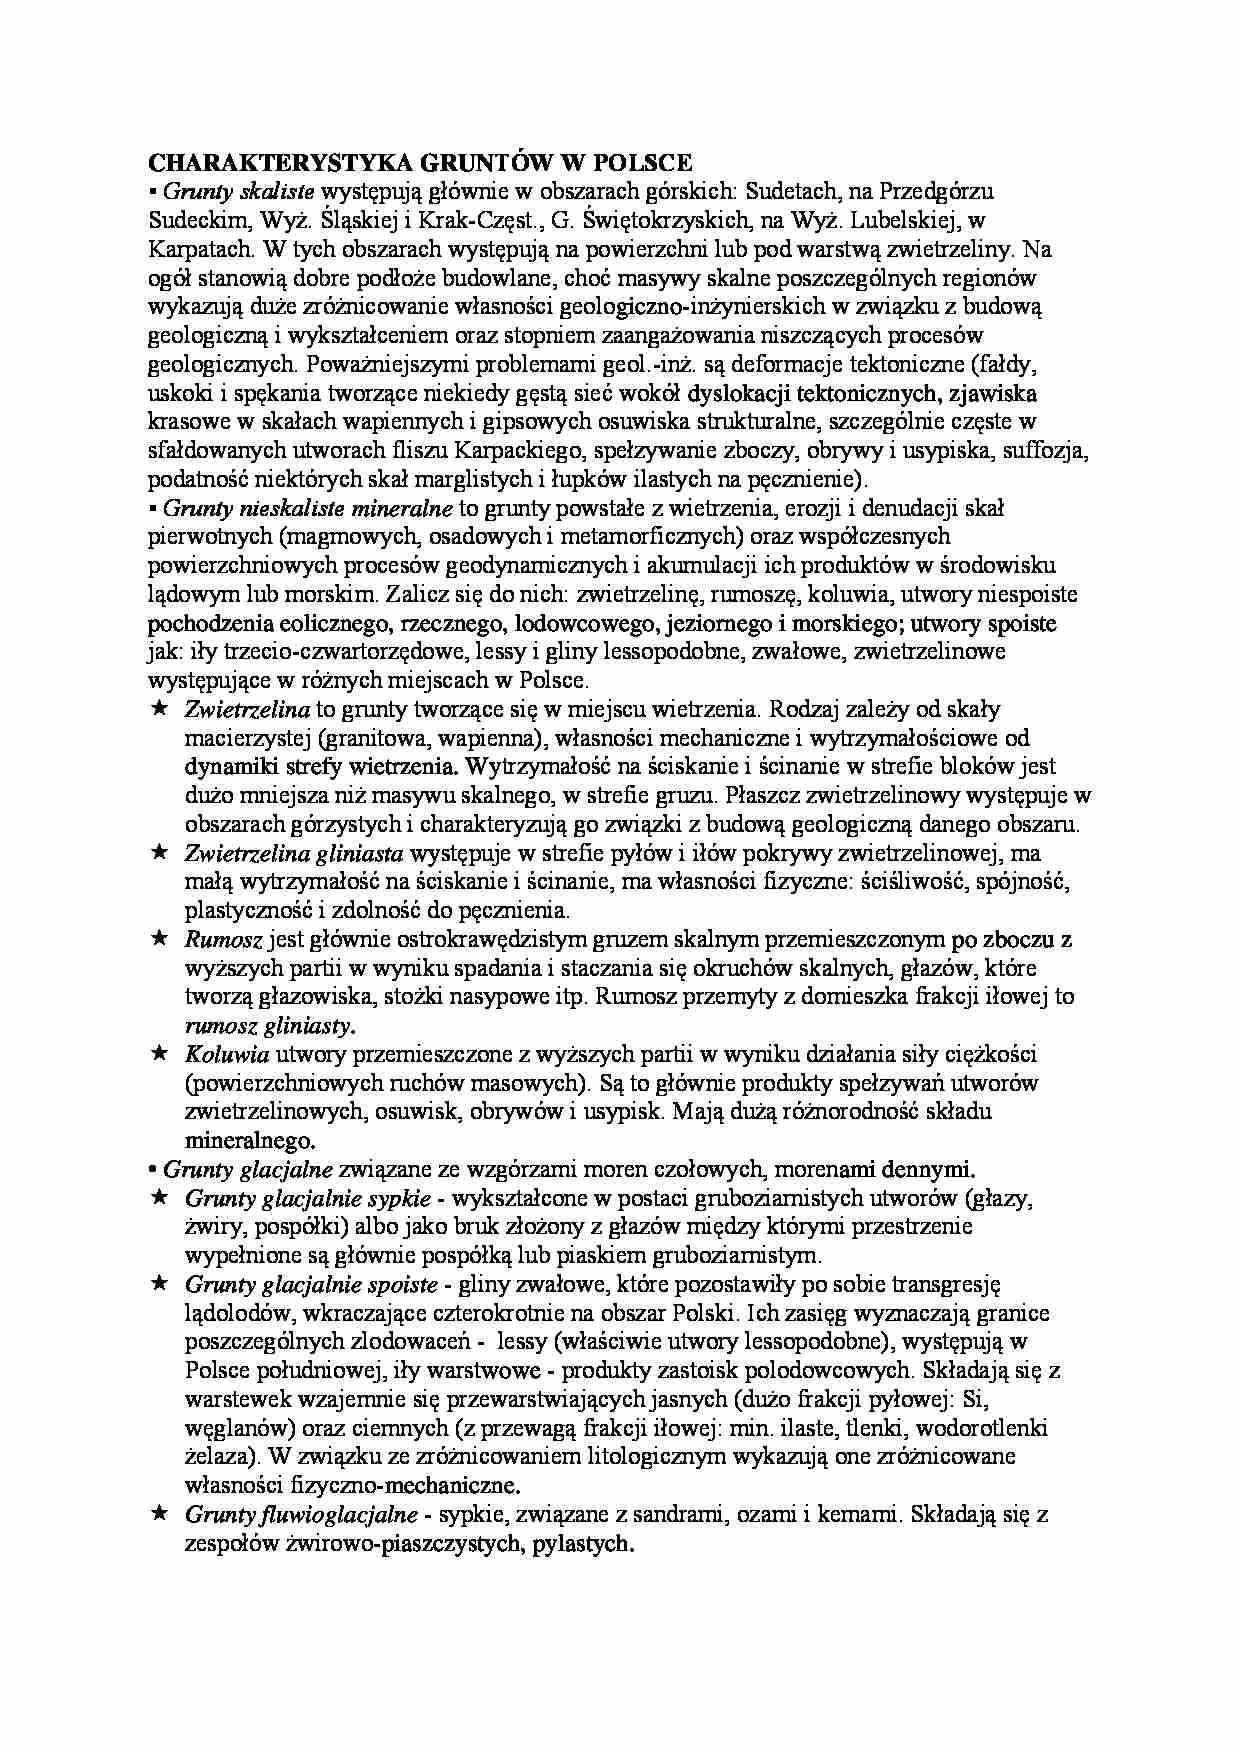 Charakterystyka gruntów w Polsce-opracowanie - Grunty skaliste - strona 1